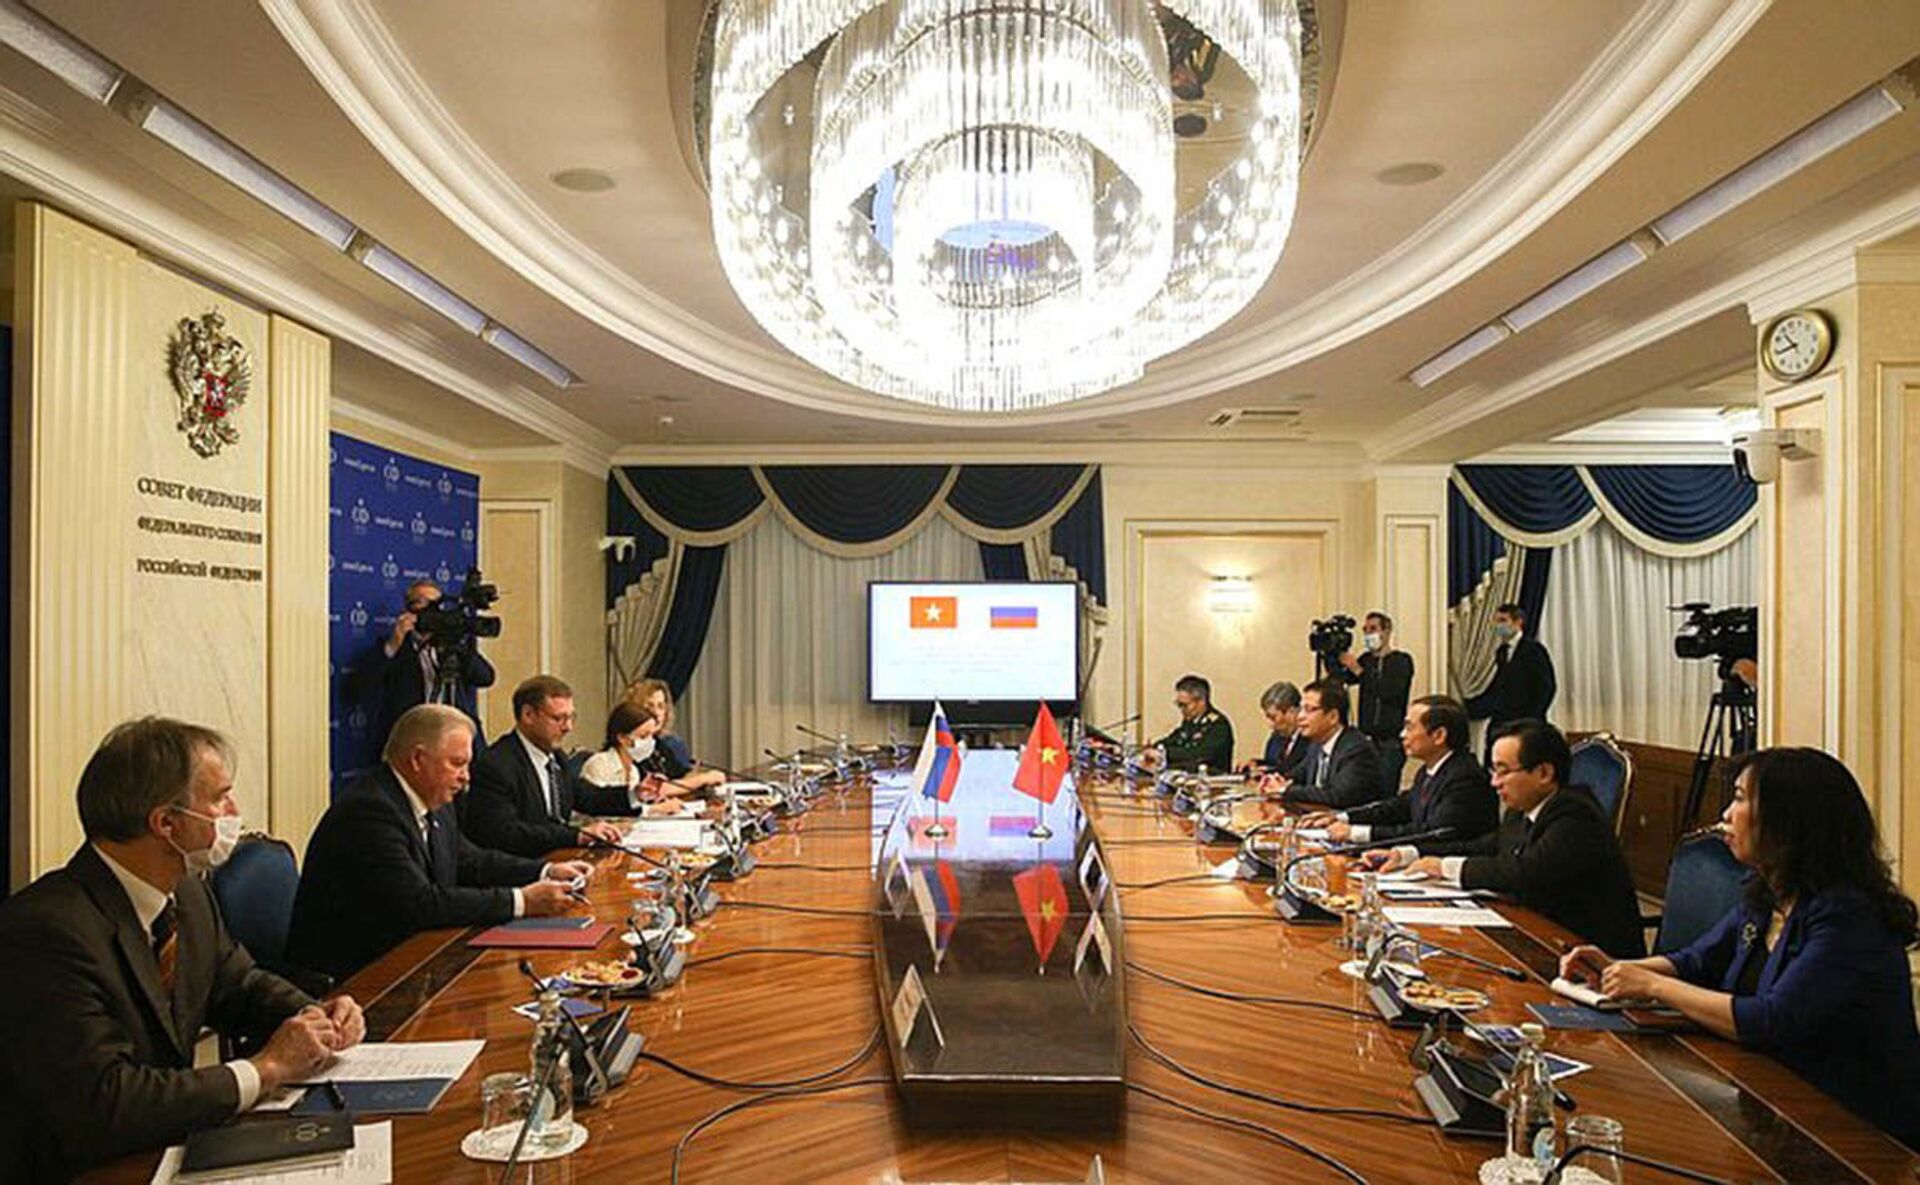 Cuộc gặp giữa Phó Chủ tịch Hội đồng Liên bang (Thương viên Nga) Konstantin Kosachev và Bộ trưởng Bộ Ngoại giao Việt Nam Bùi Thanh Sơn - Sputnik Việt Nam, 1920, 05.10.2021